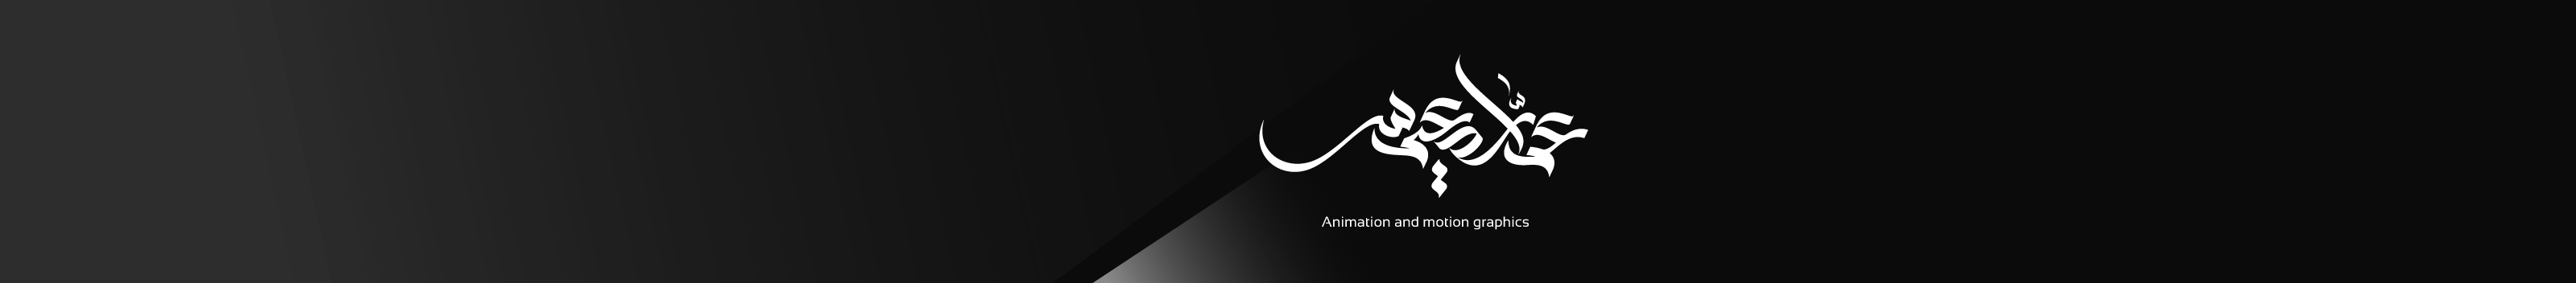 Ammar Diems's profile banner